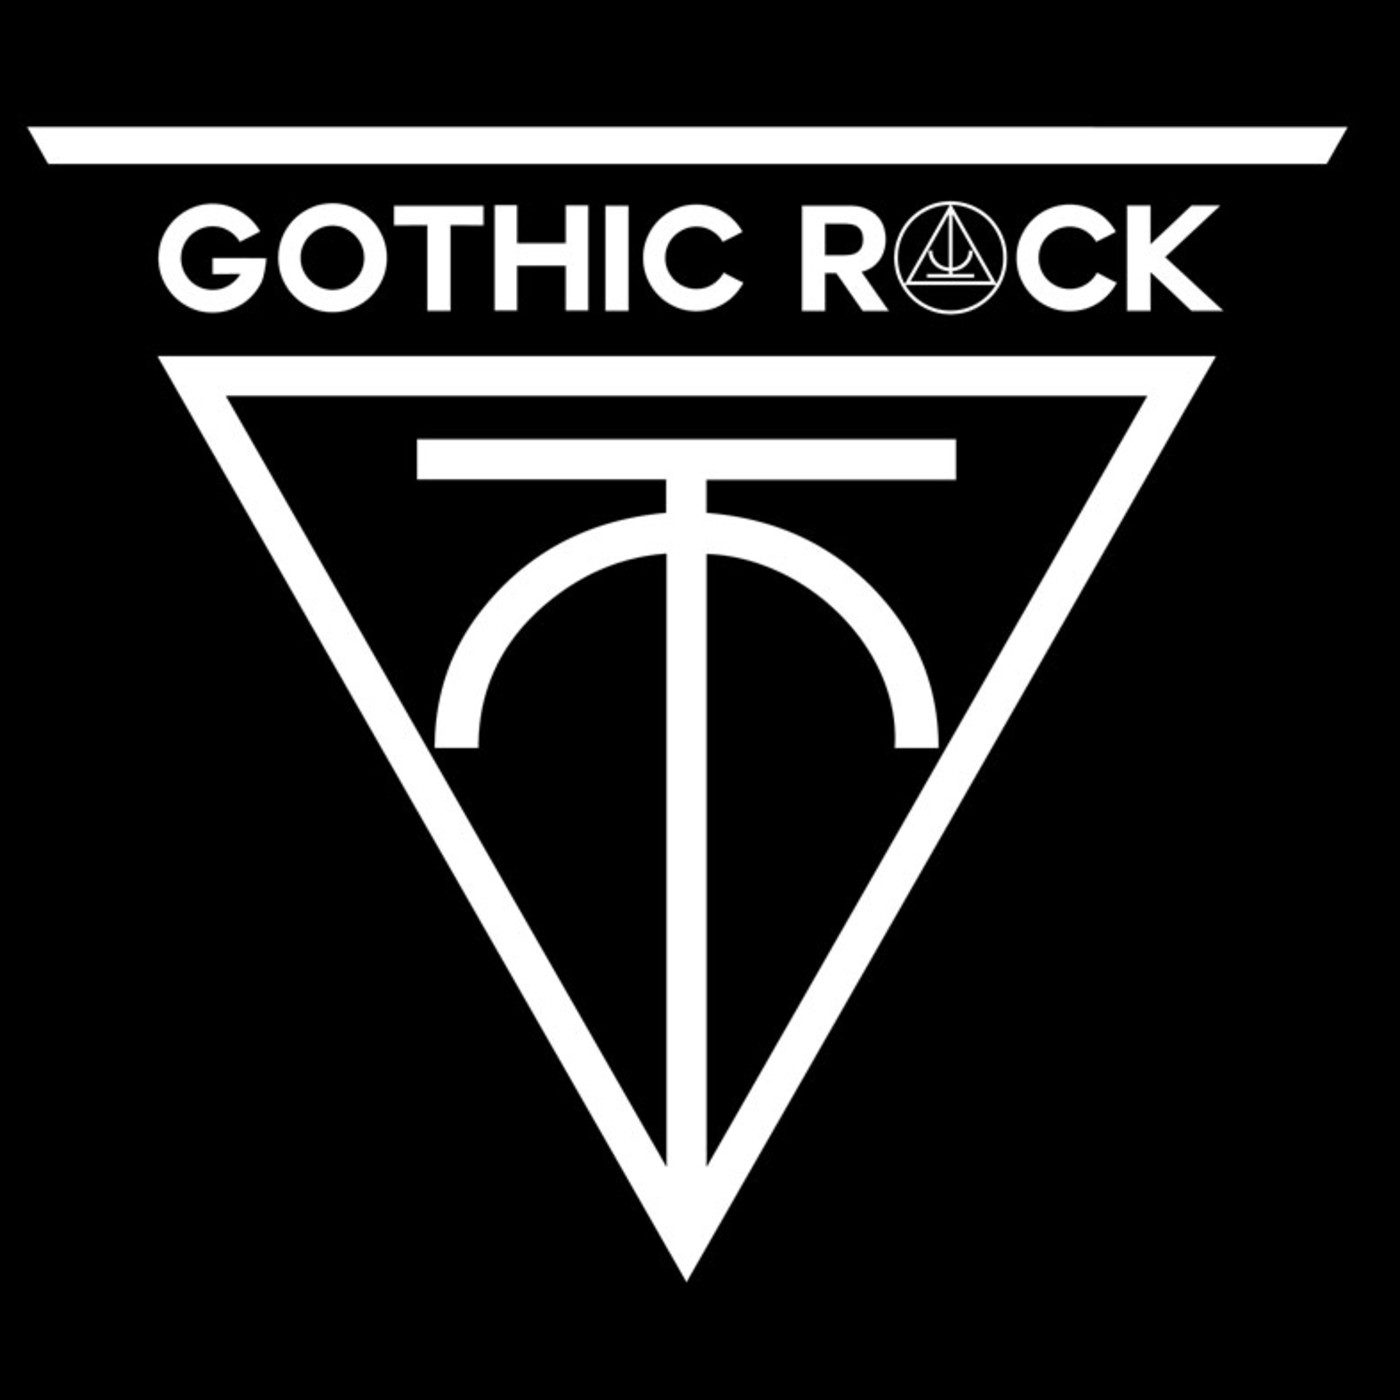 Gothic Rock EP40 (14/07/18)